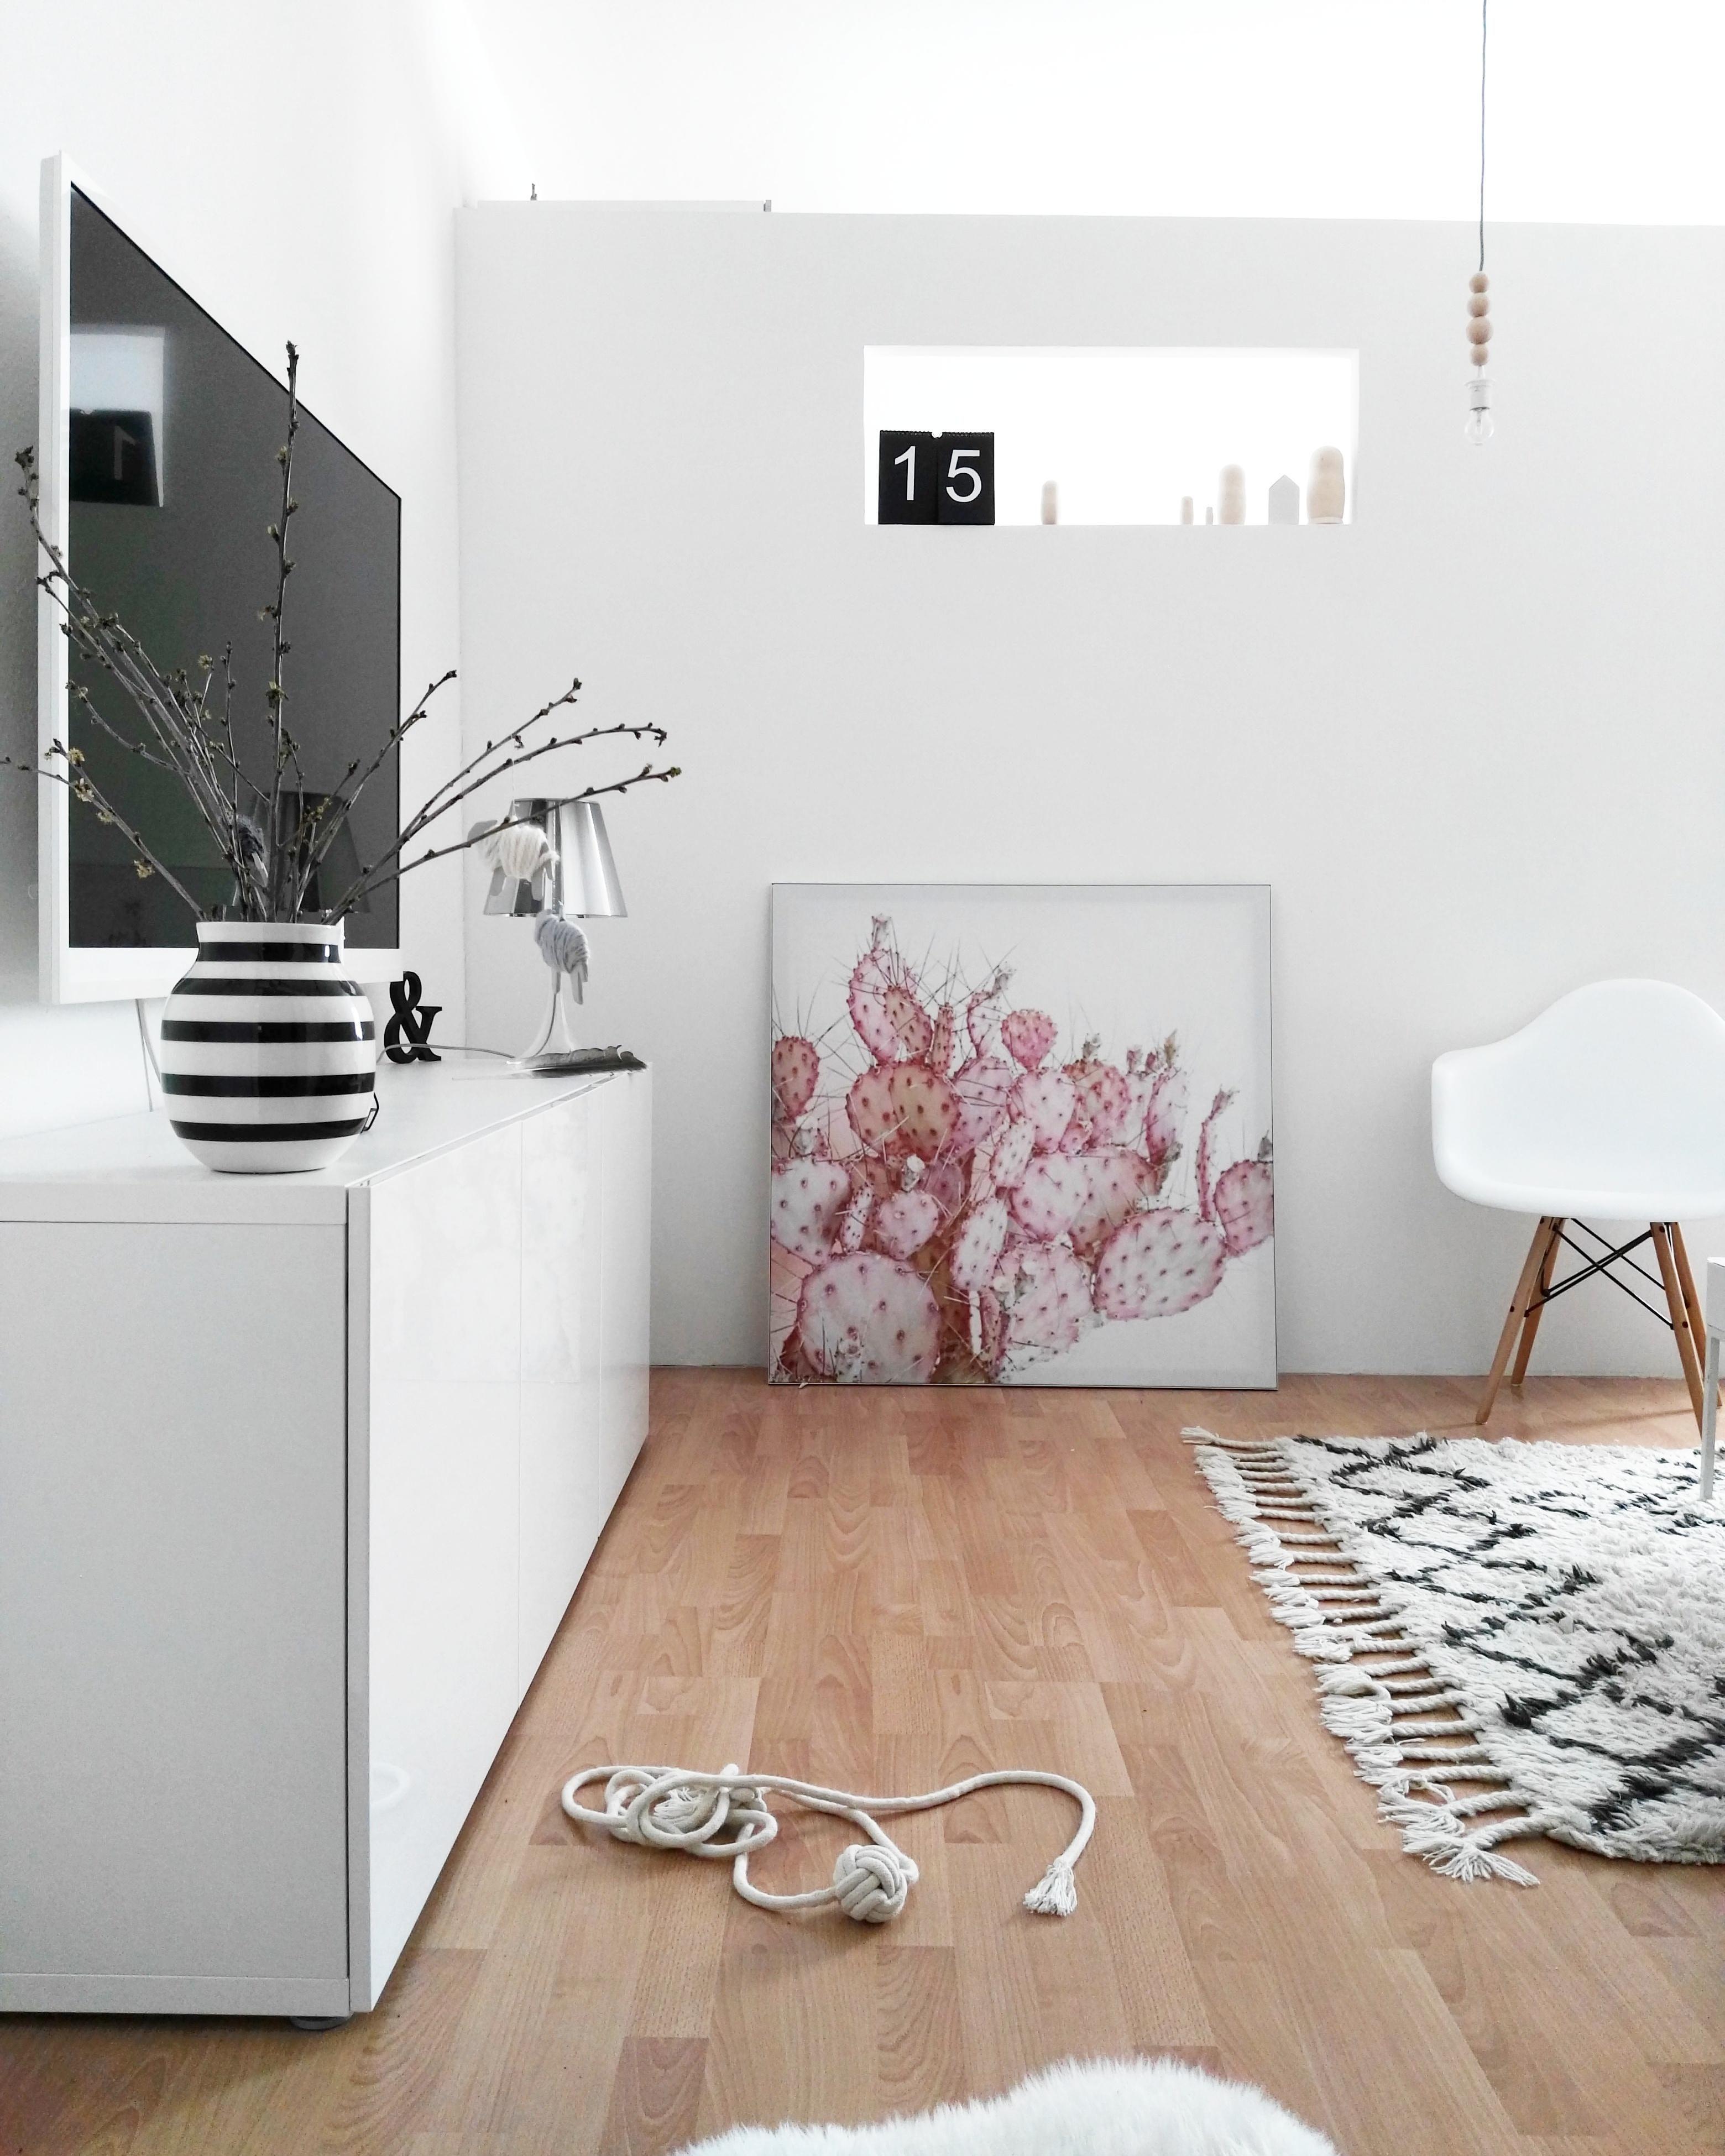 unser Wohnzimmer....
#living #scandinavianhome #White #kählervase #Sideboard  #eames #vitra #nordic #wohnzimmer